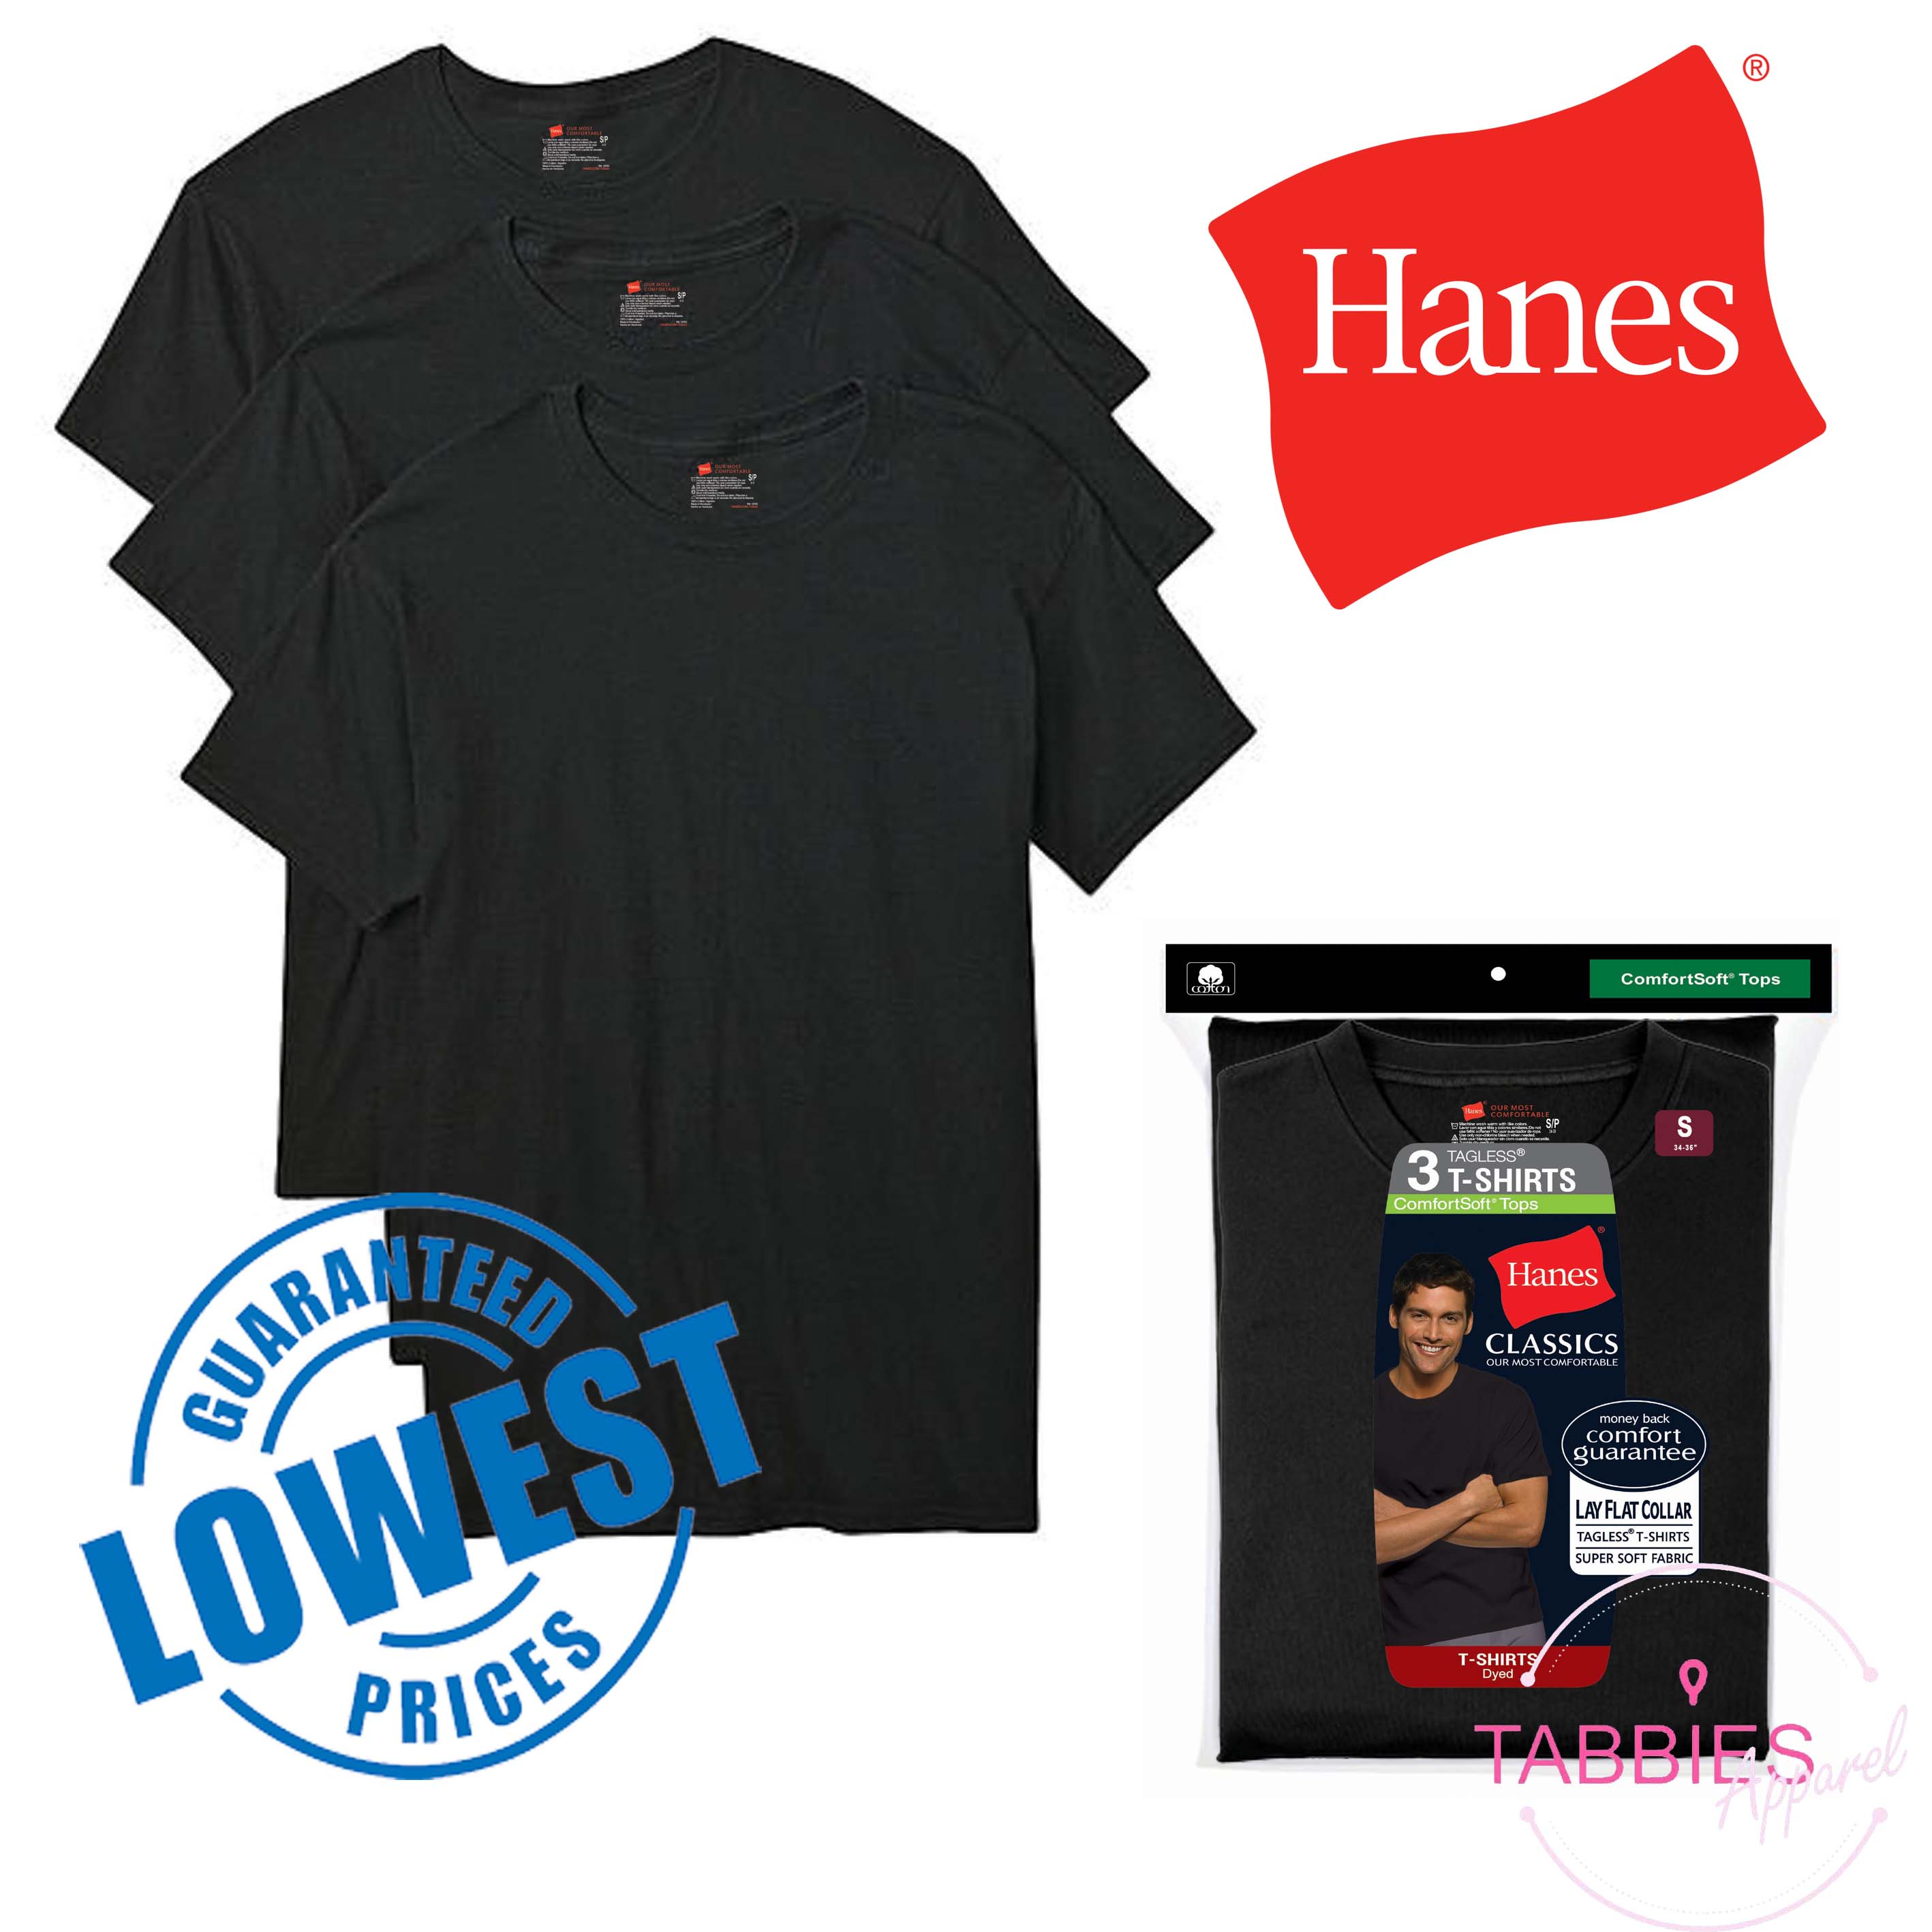 Hanes, Shirts